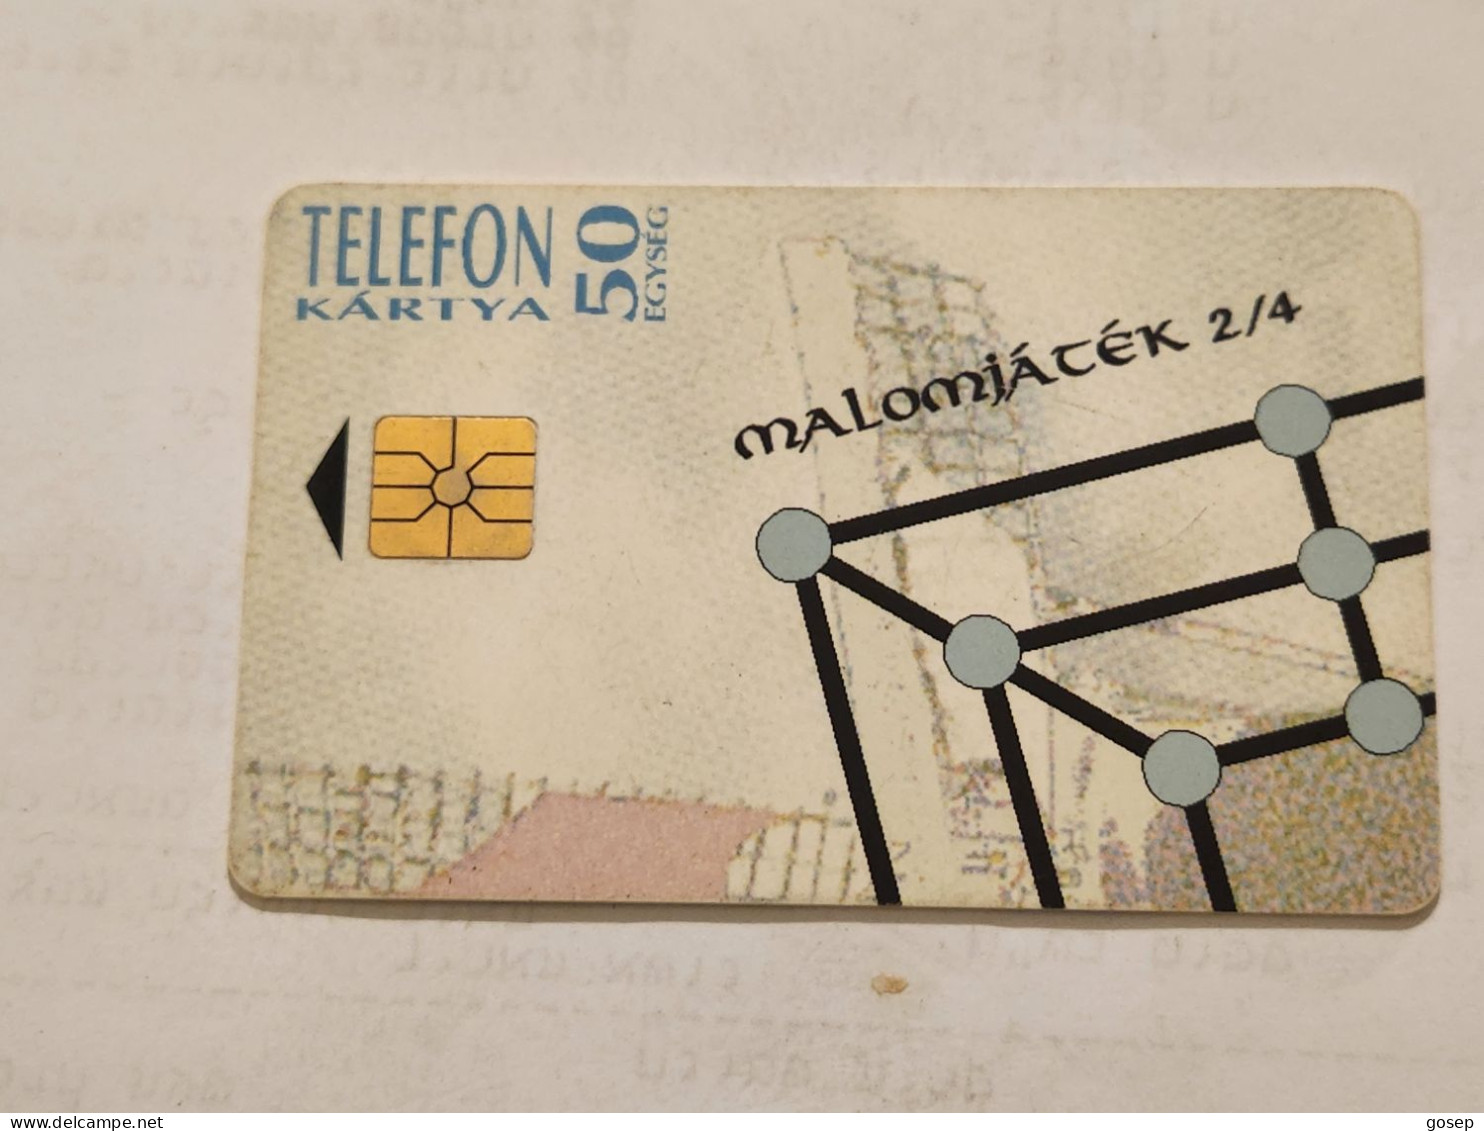 HUNGARY-(HU-P-1994-18Aa)-Malom -Tata (2/4)-(152)(50units)(1994)(tirage-250.000)-USED CARD+1card Prepiad Free - Ungheria